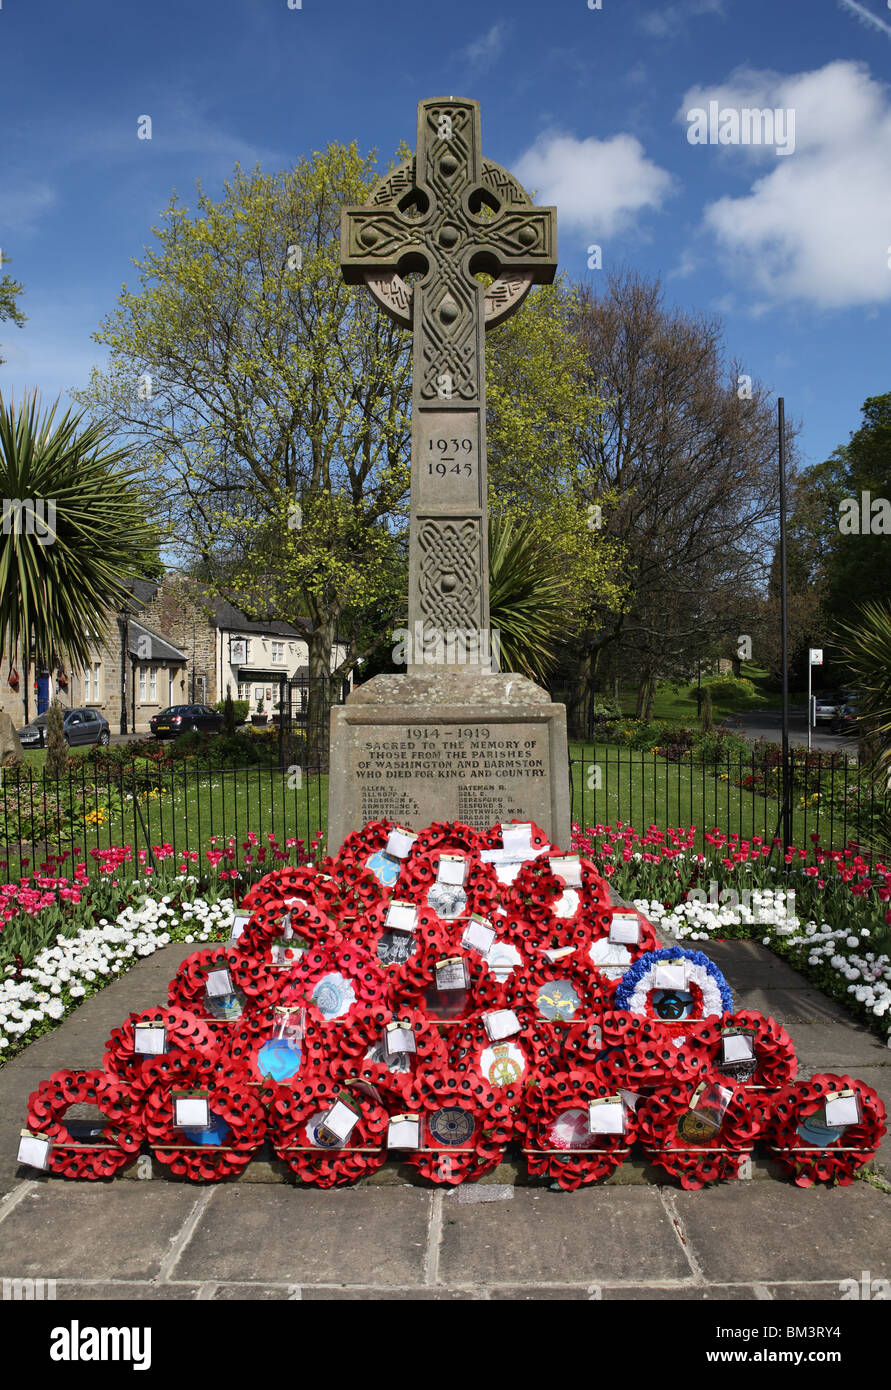 La decorazione floreale circonda il memoriale di guerra nel villaggio di Washington, Tyne and Wear, Inghilterra Foto Stock